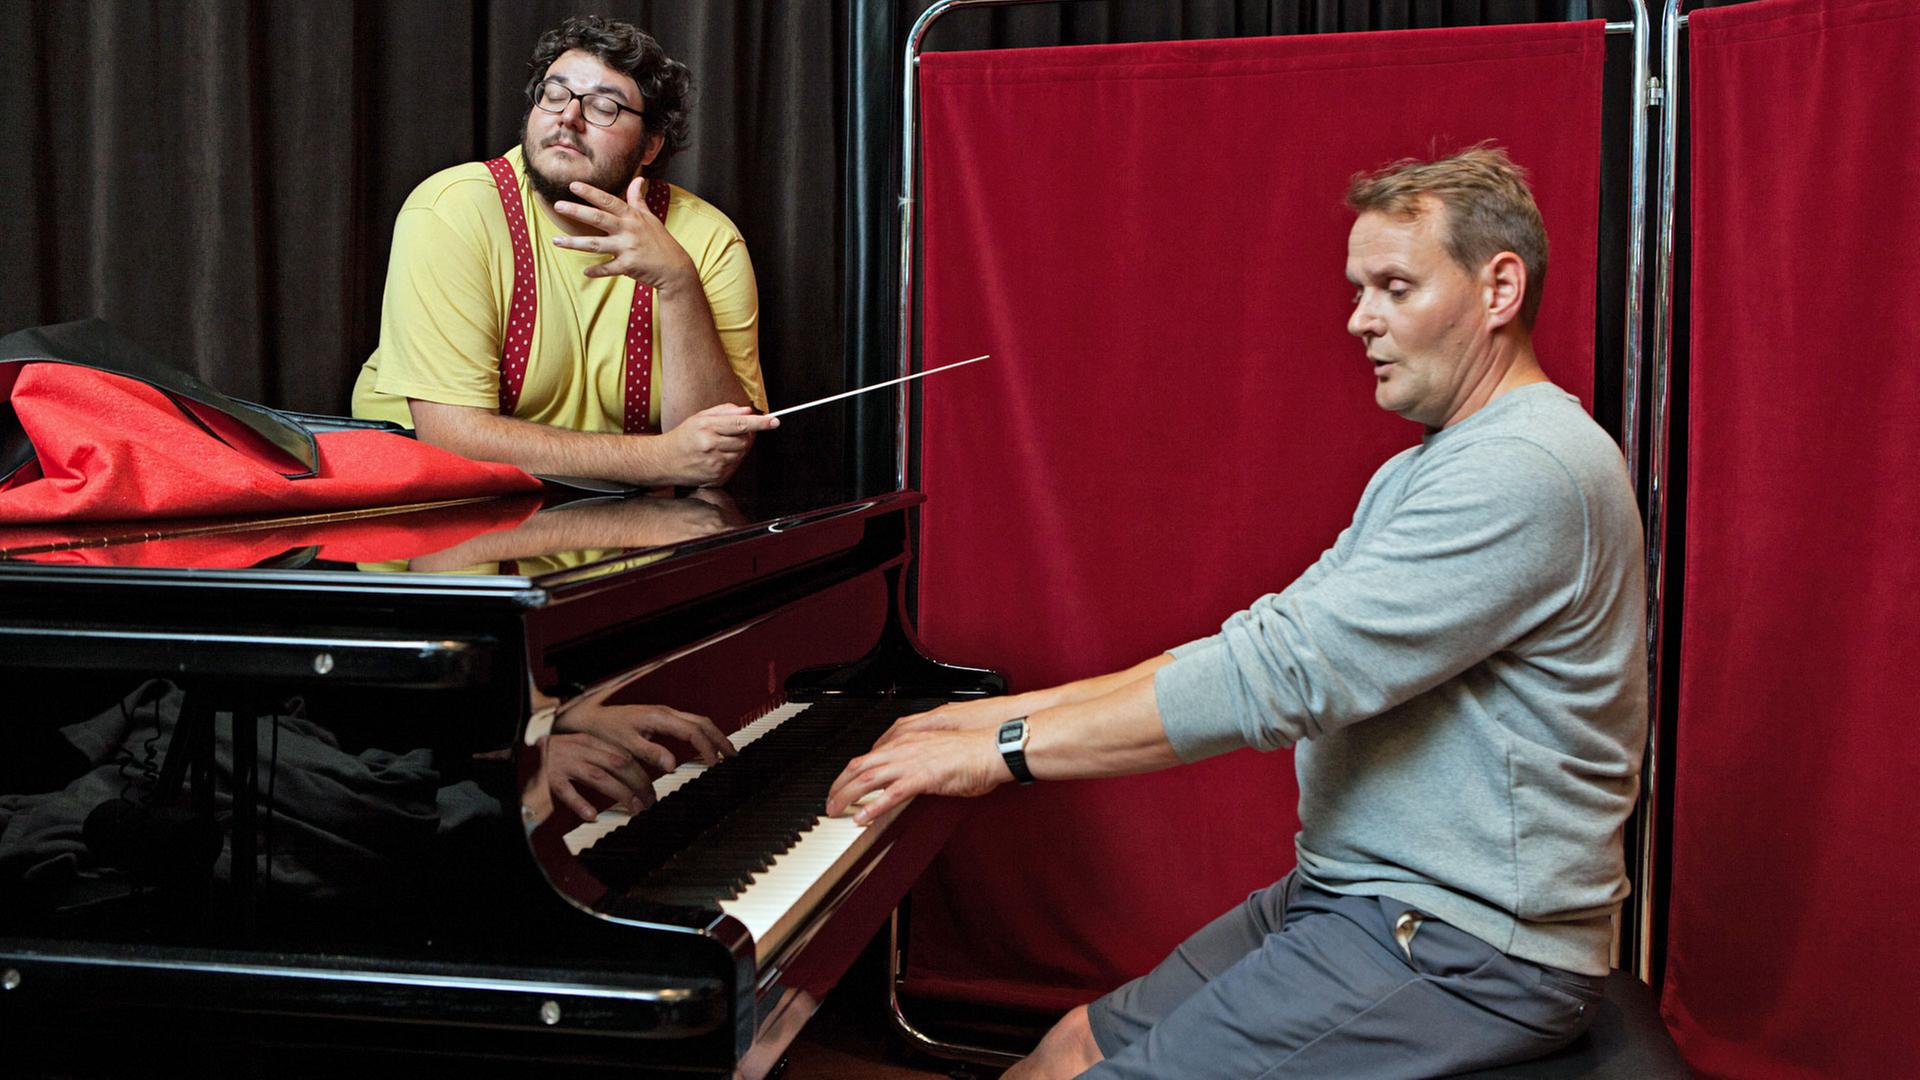 Axel Ranisch und Devid Striesow: Axel schwingt den Taktstock, während Devid Klavier spielt.